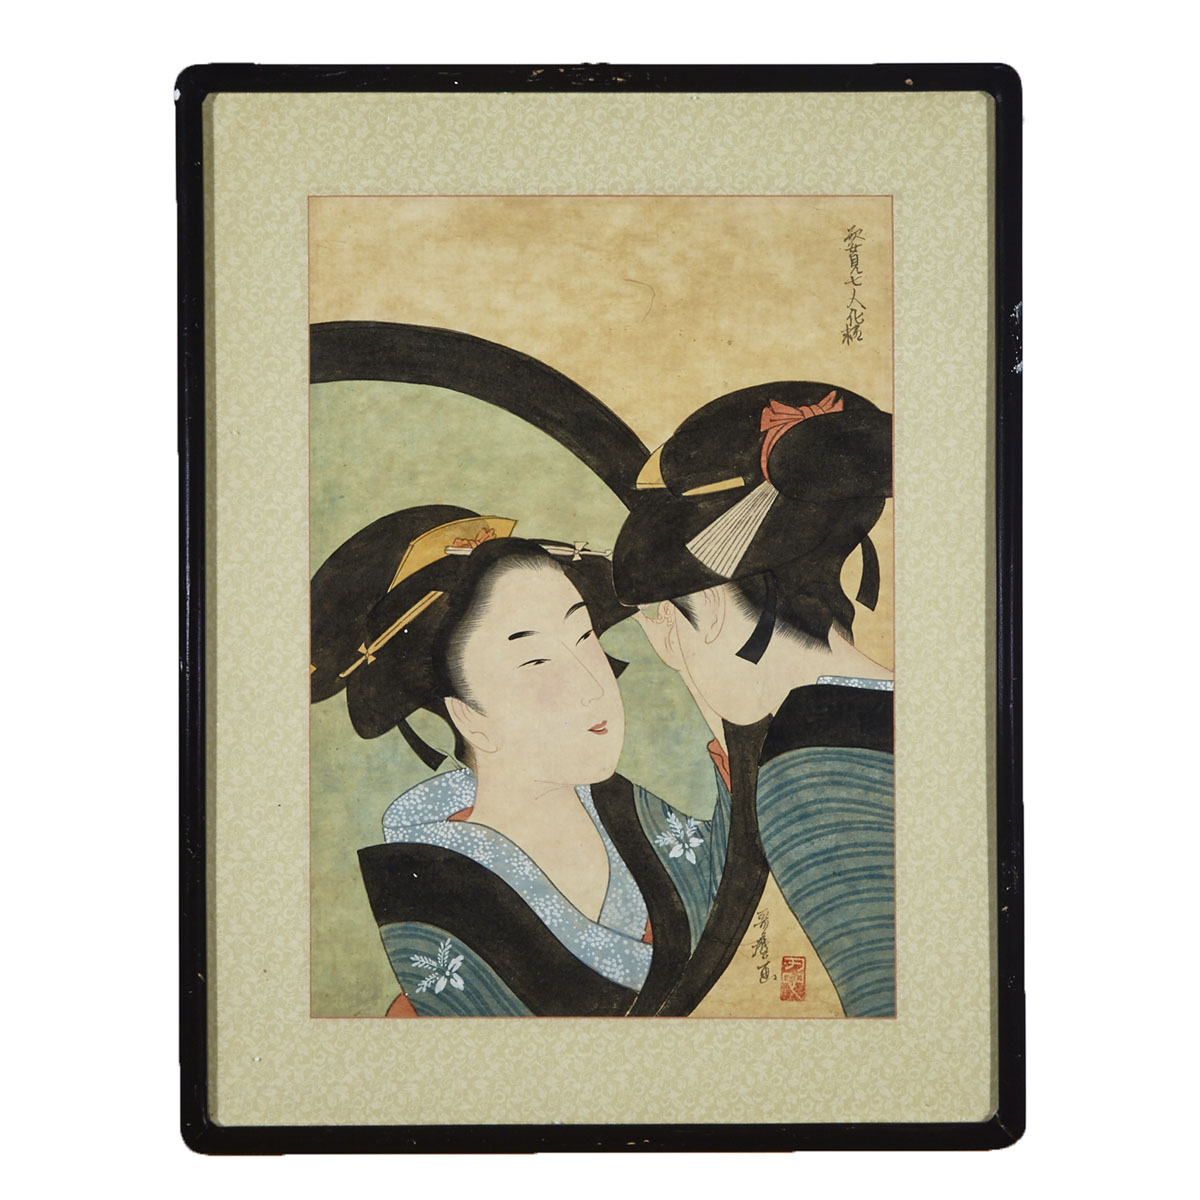 After Kitagawa Utamaro (1753-1806)